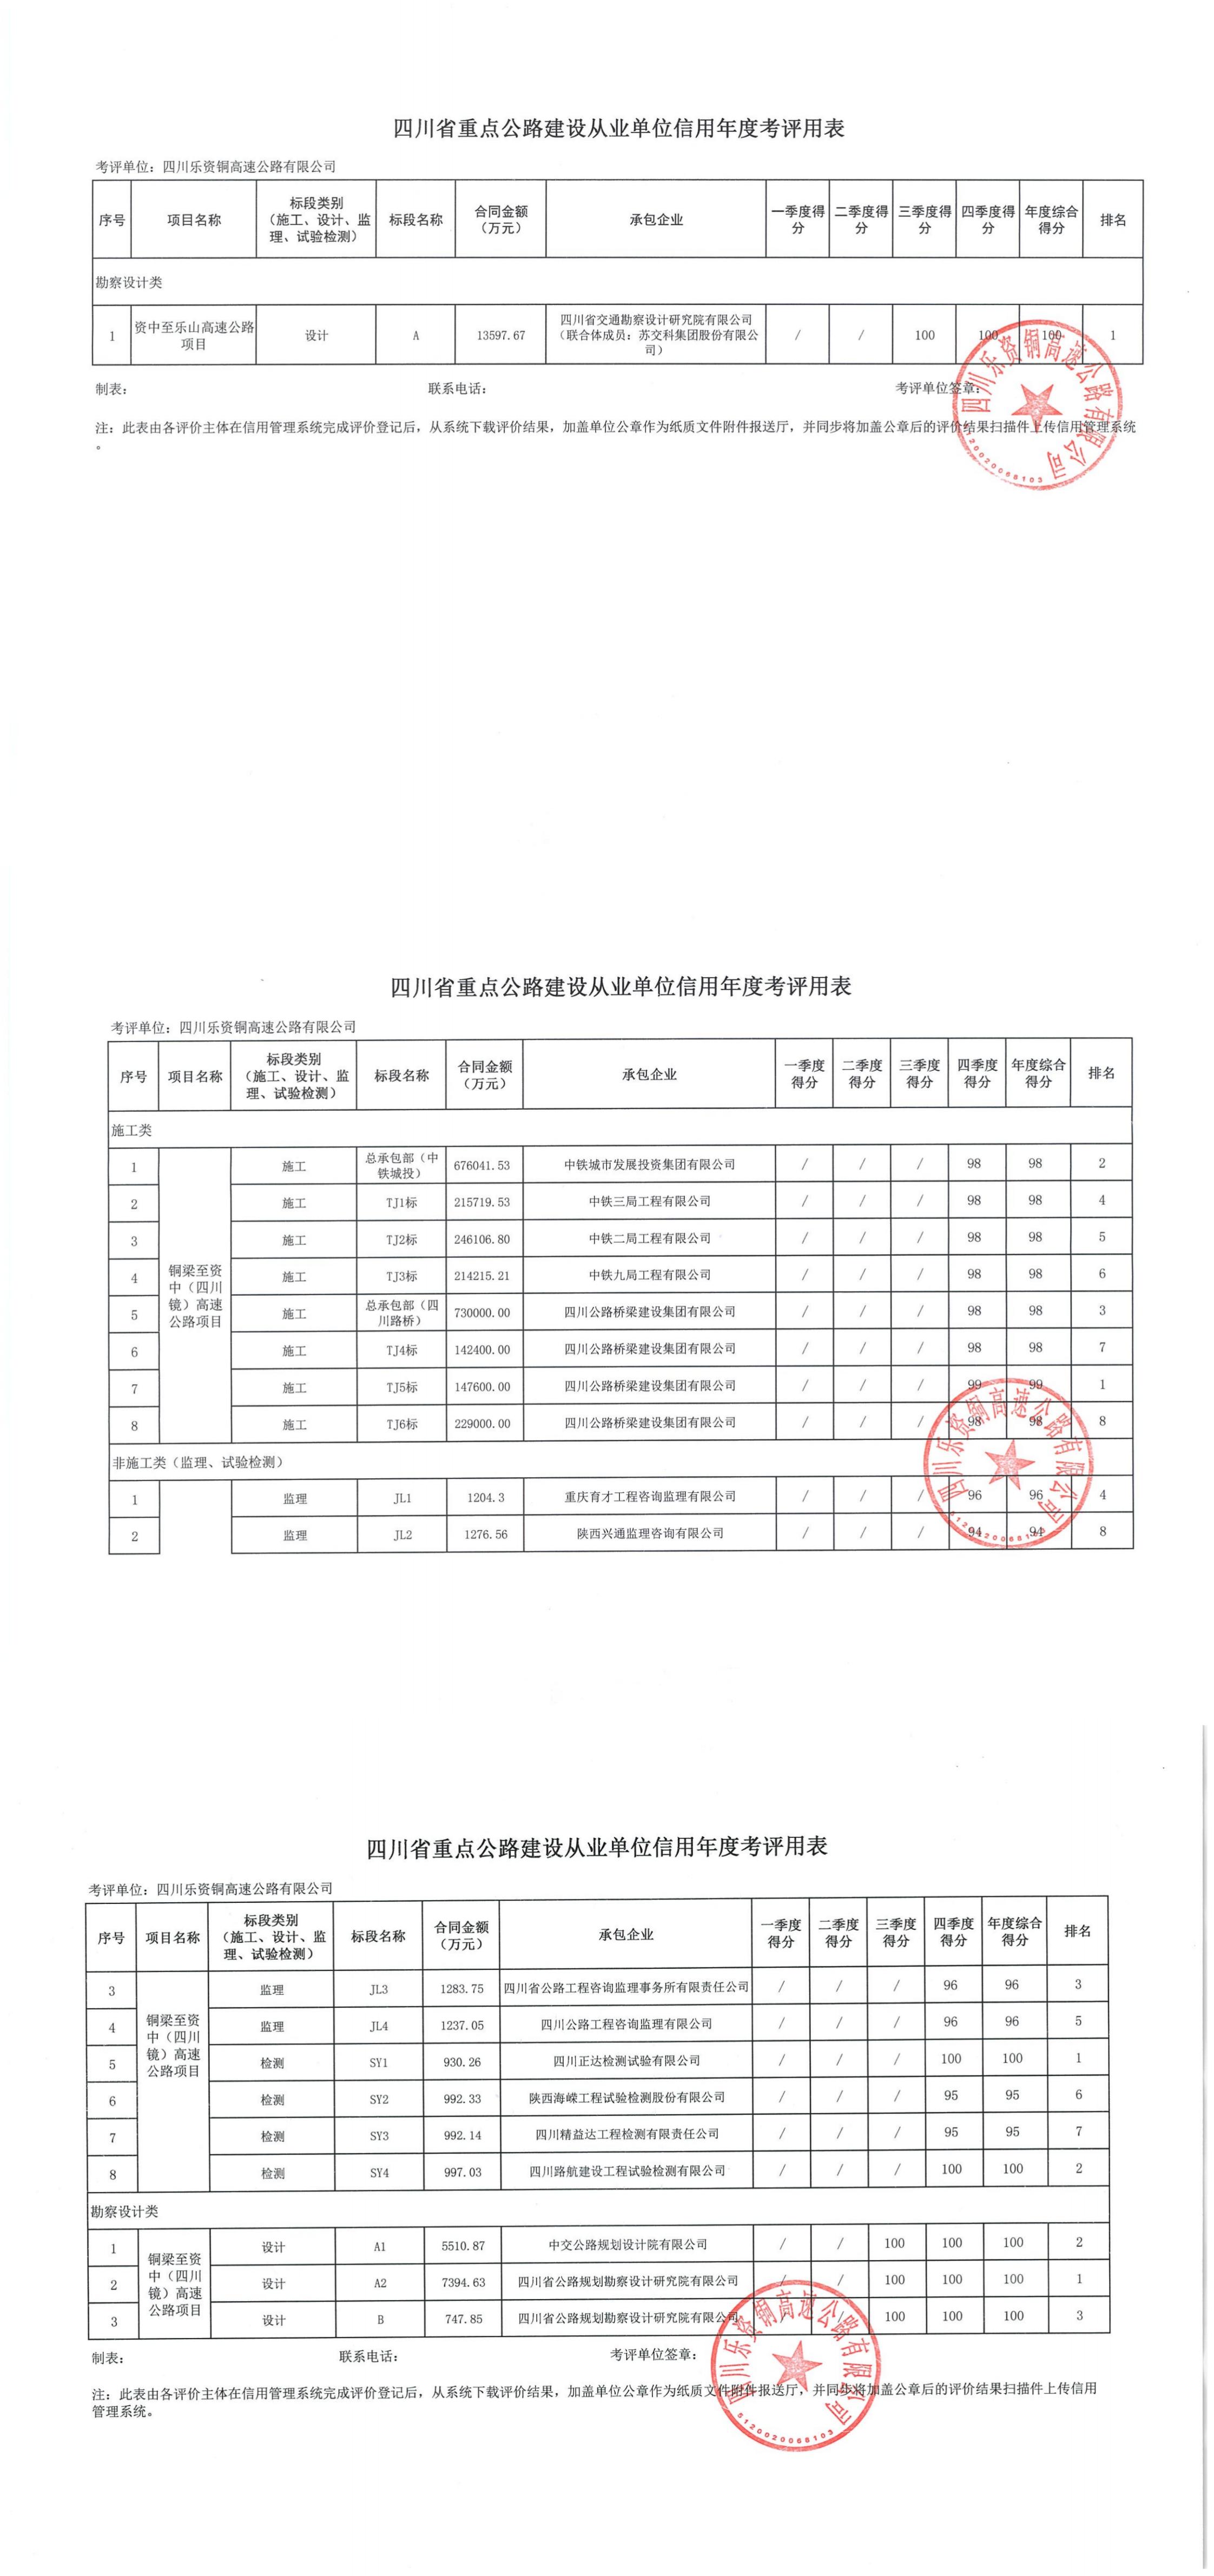 四川省重点公路建设从业单位信用年度考评用表_00.jpg